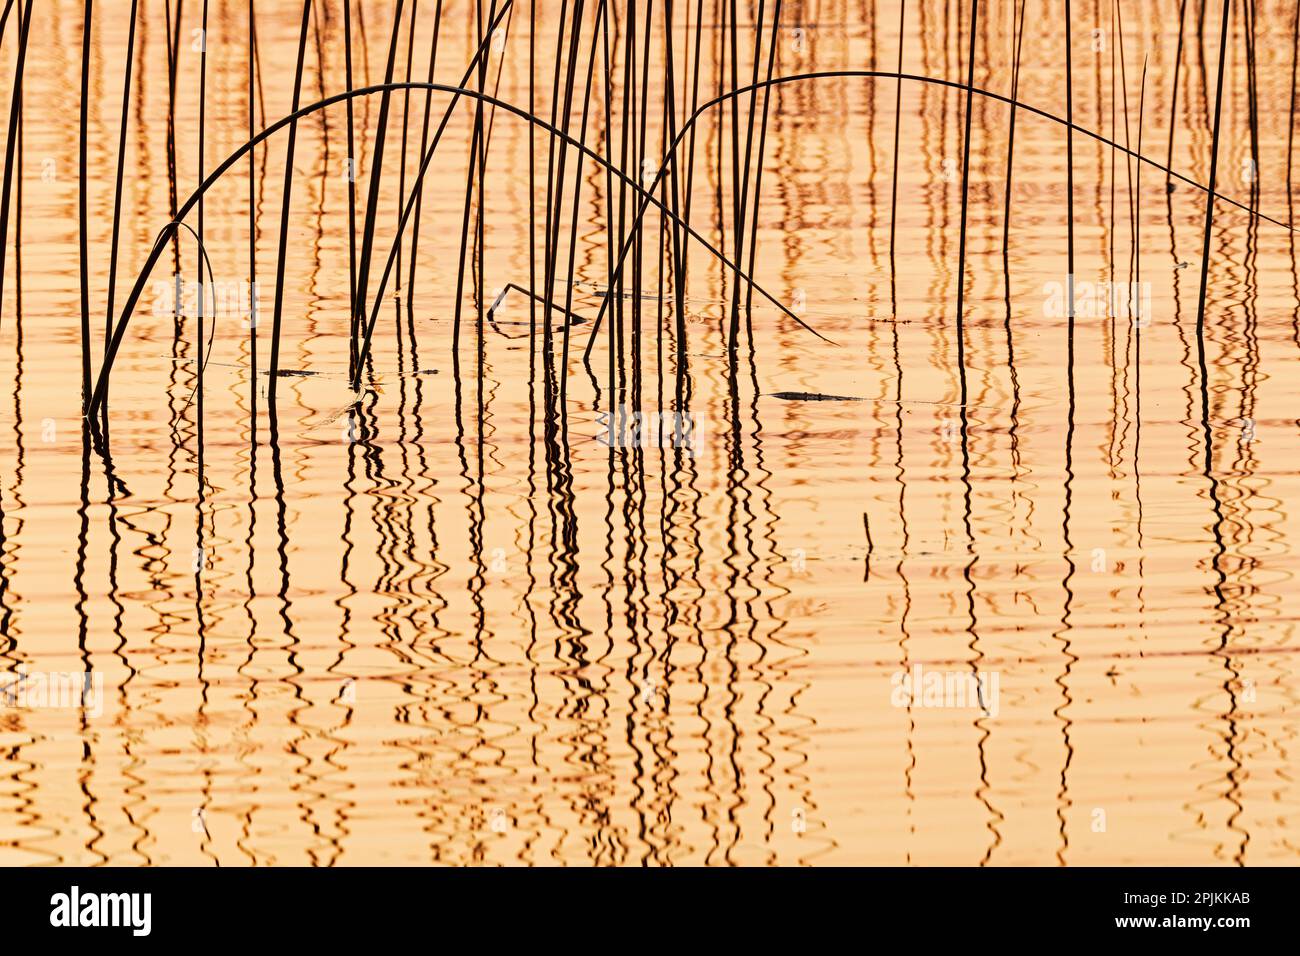 Canada, Manitoba, Wekusko Falls Provincial Park. Reeds reflect patterns in Wekusko Lake. Stock Photo